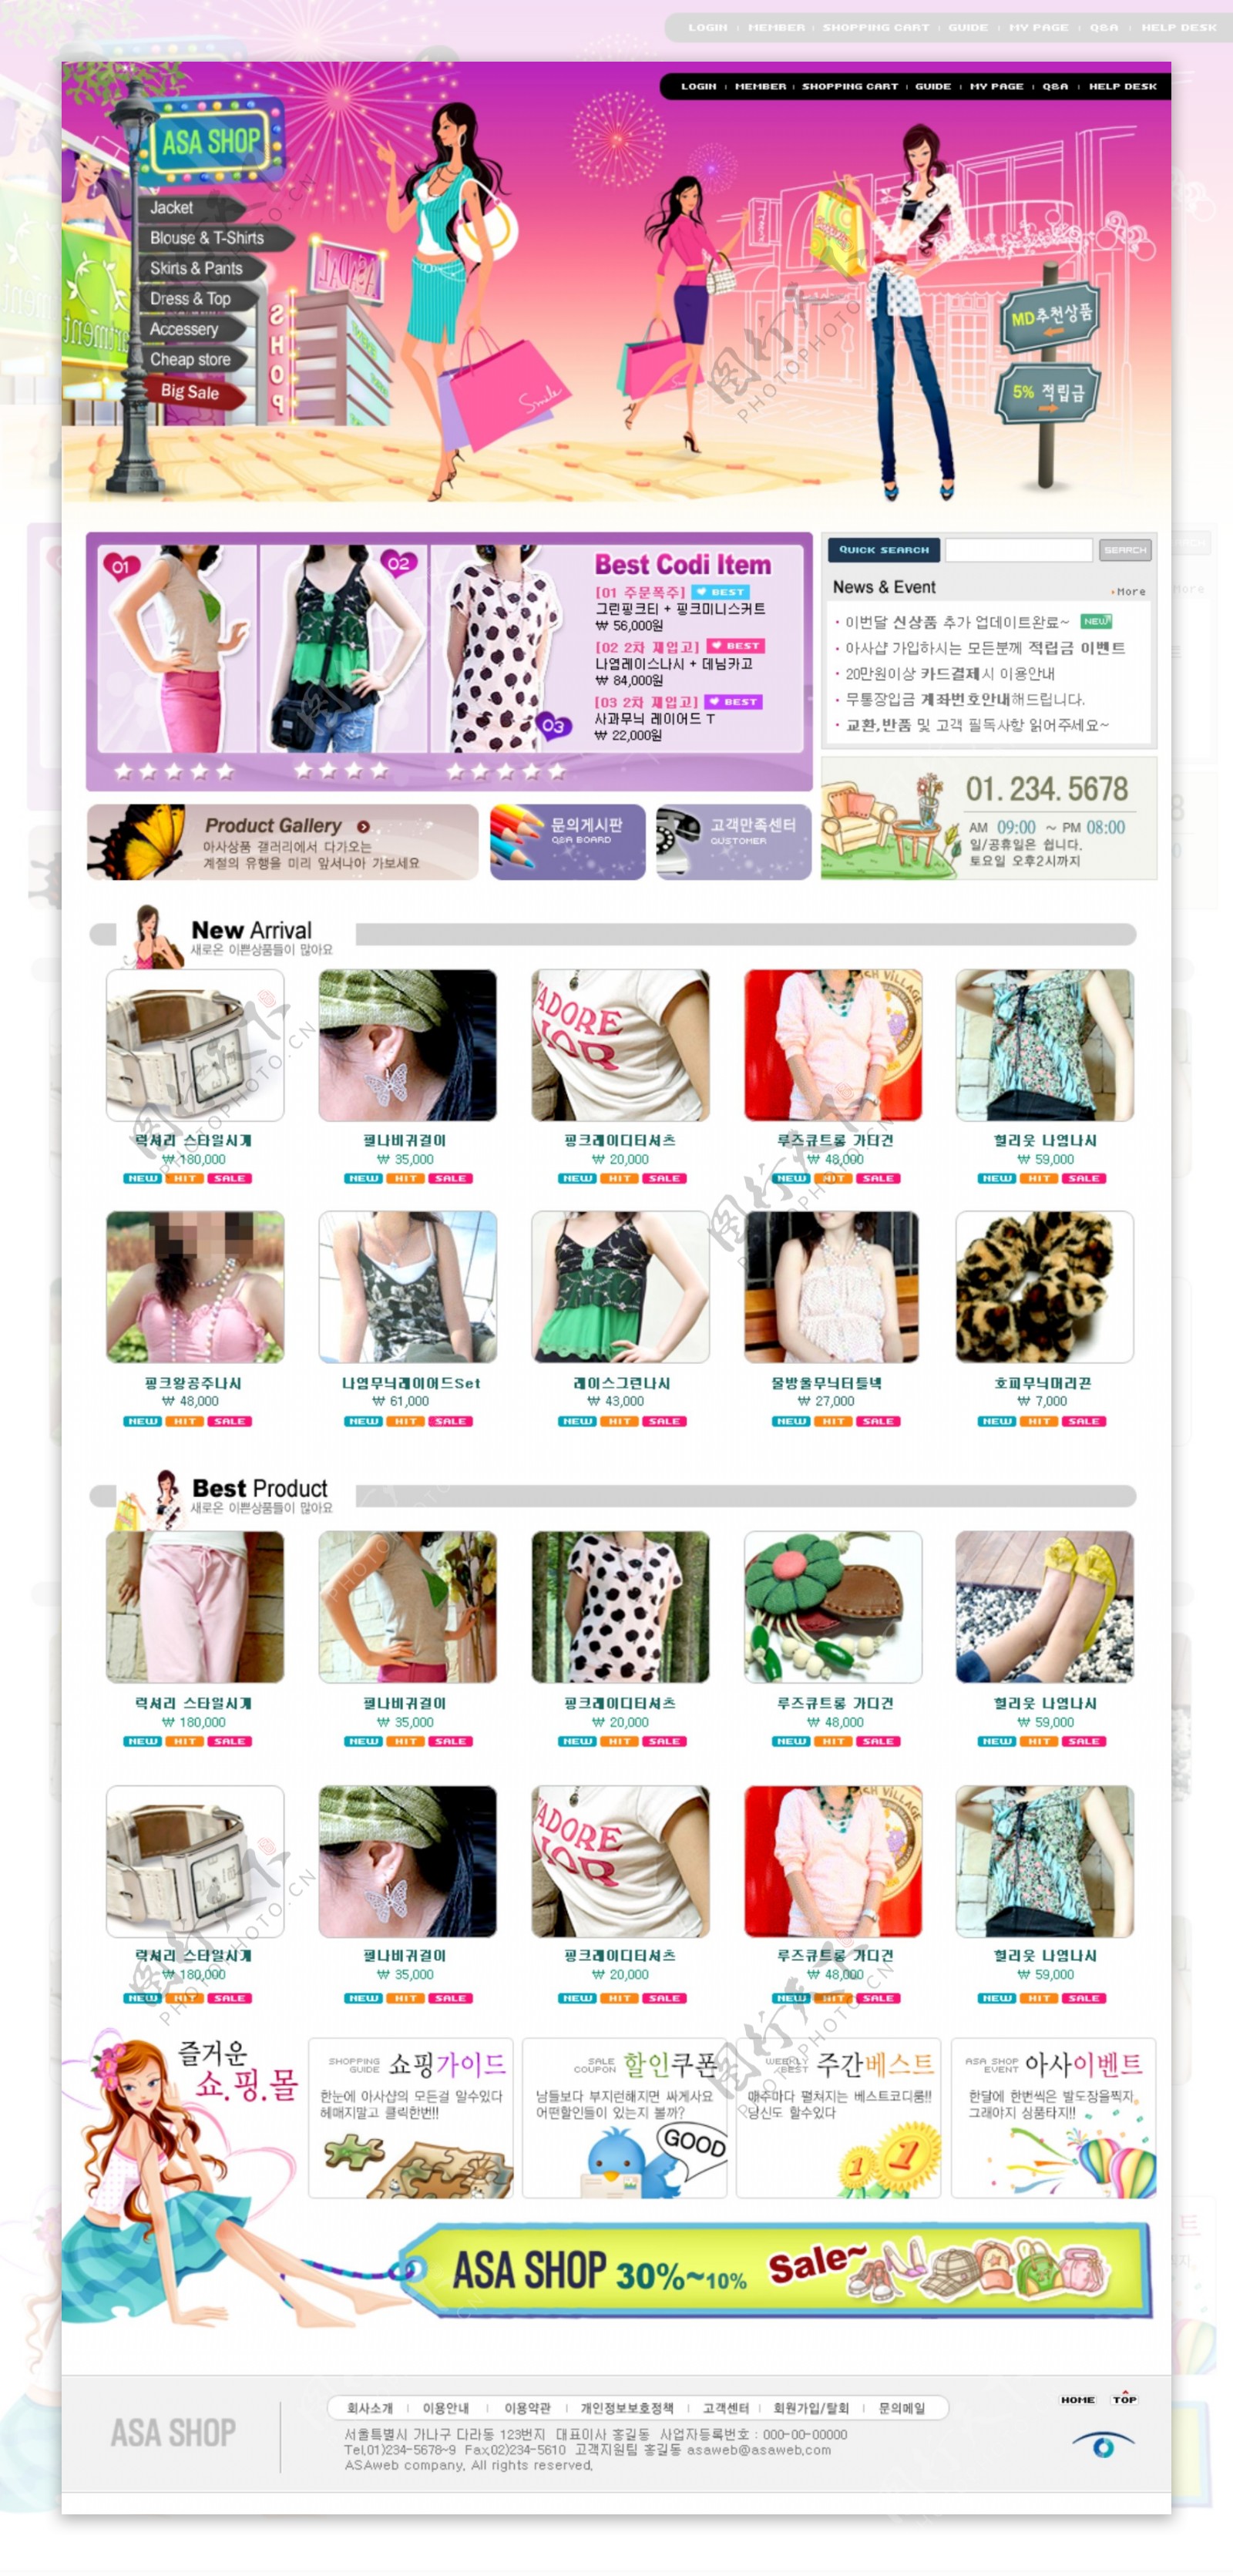 靓丽的韩国女性休闲服饰销售网站网页模板图片